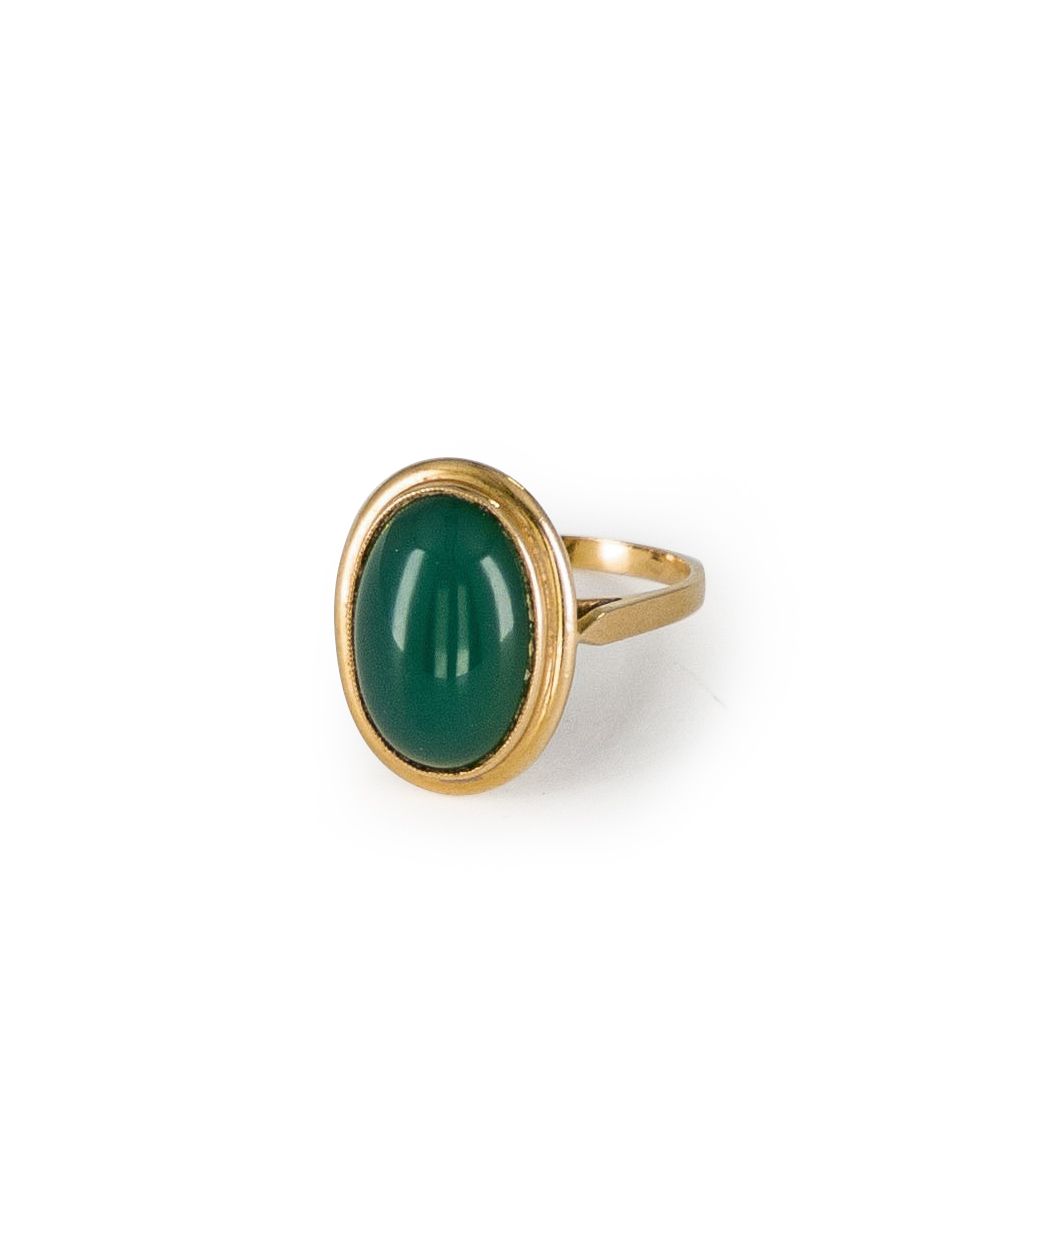 Null 18K（750）金戒指，镶嵌有椭圆形凸圆形绿玉髓。手指大小：55。 毛重：5.2克（芯片）